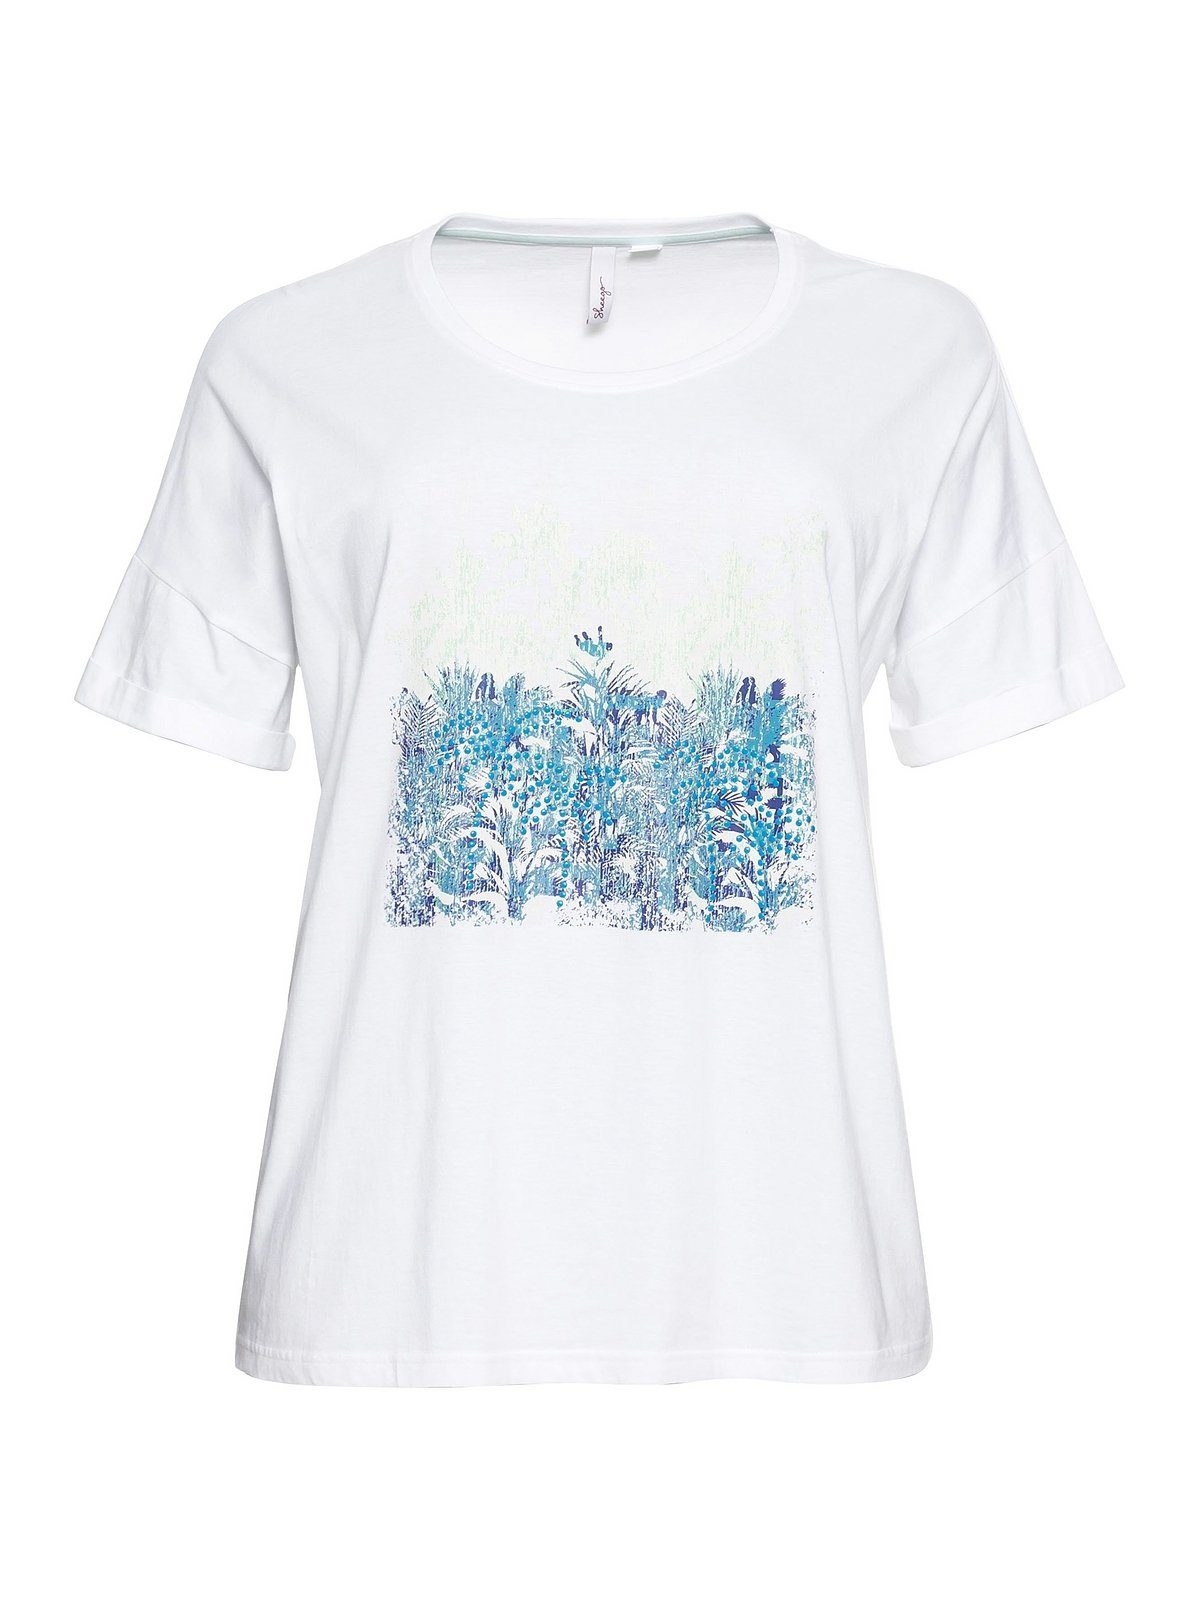 Sheego T-Shirt Große Größen Frontdruck mit Ärmelaufschlag weiß und